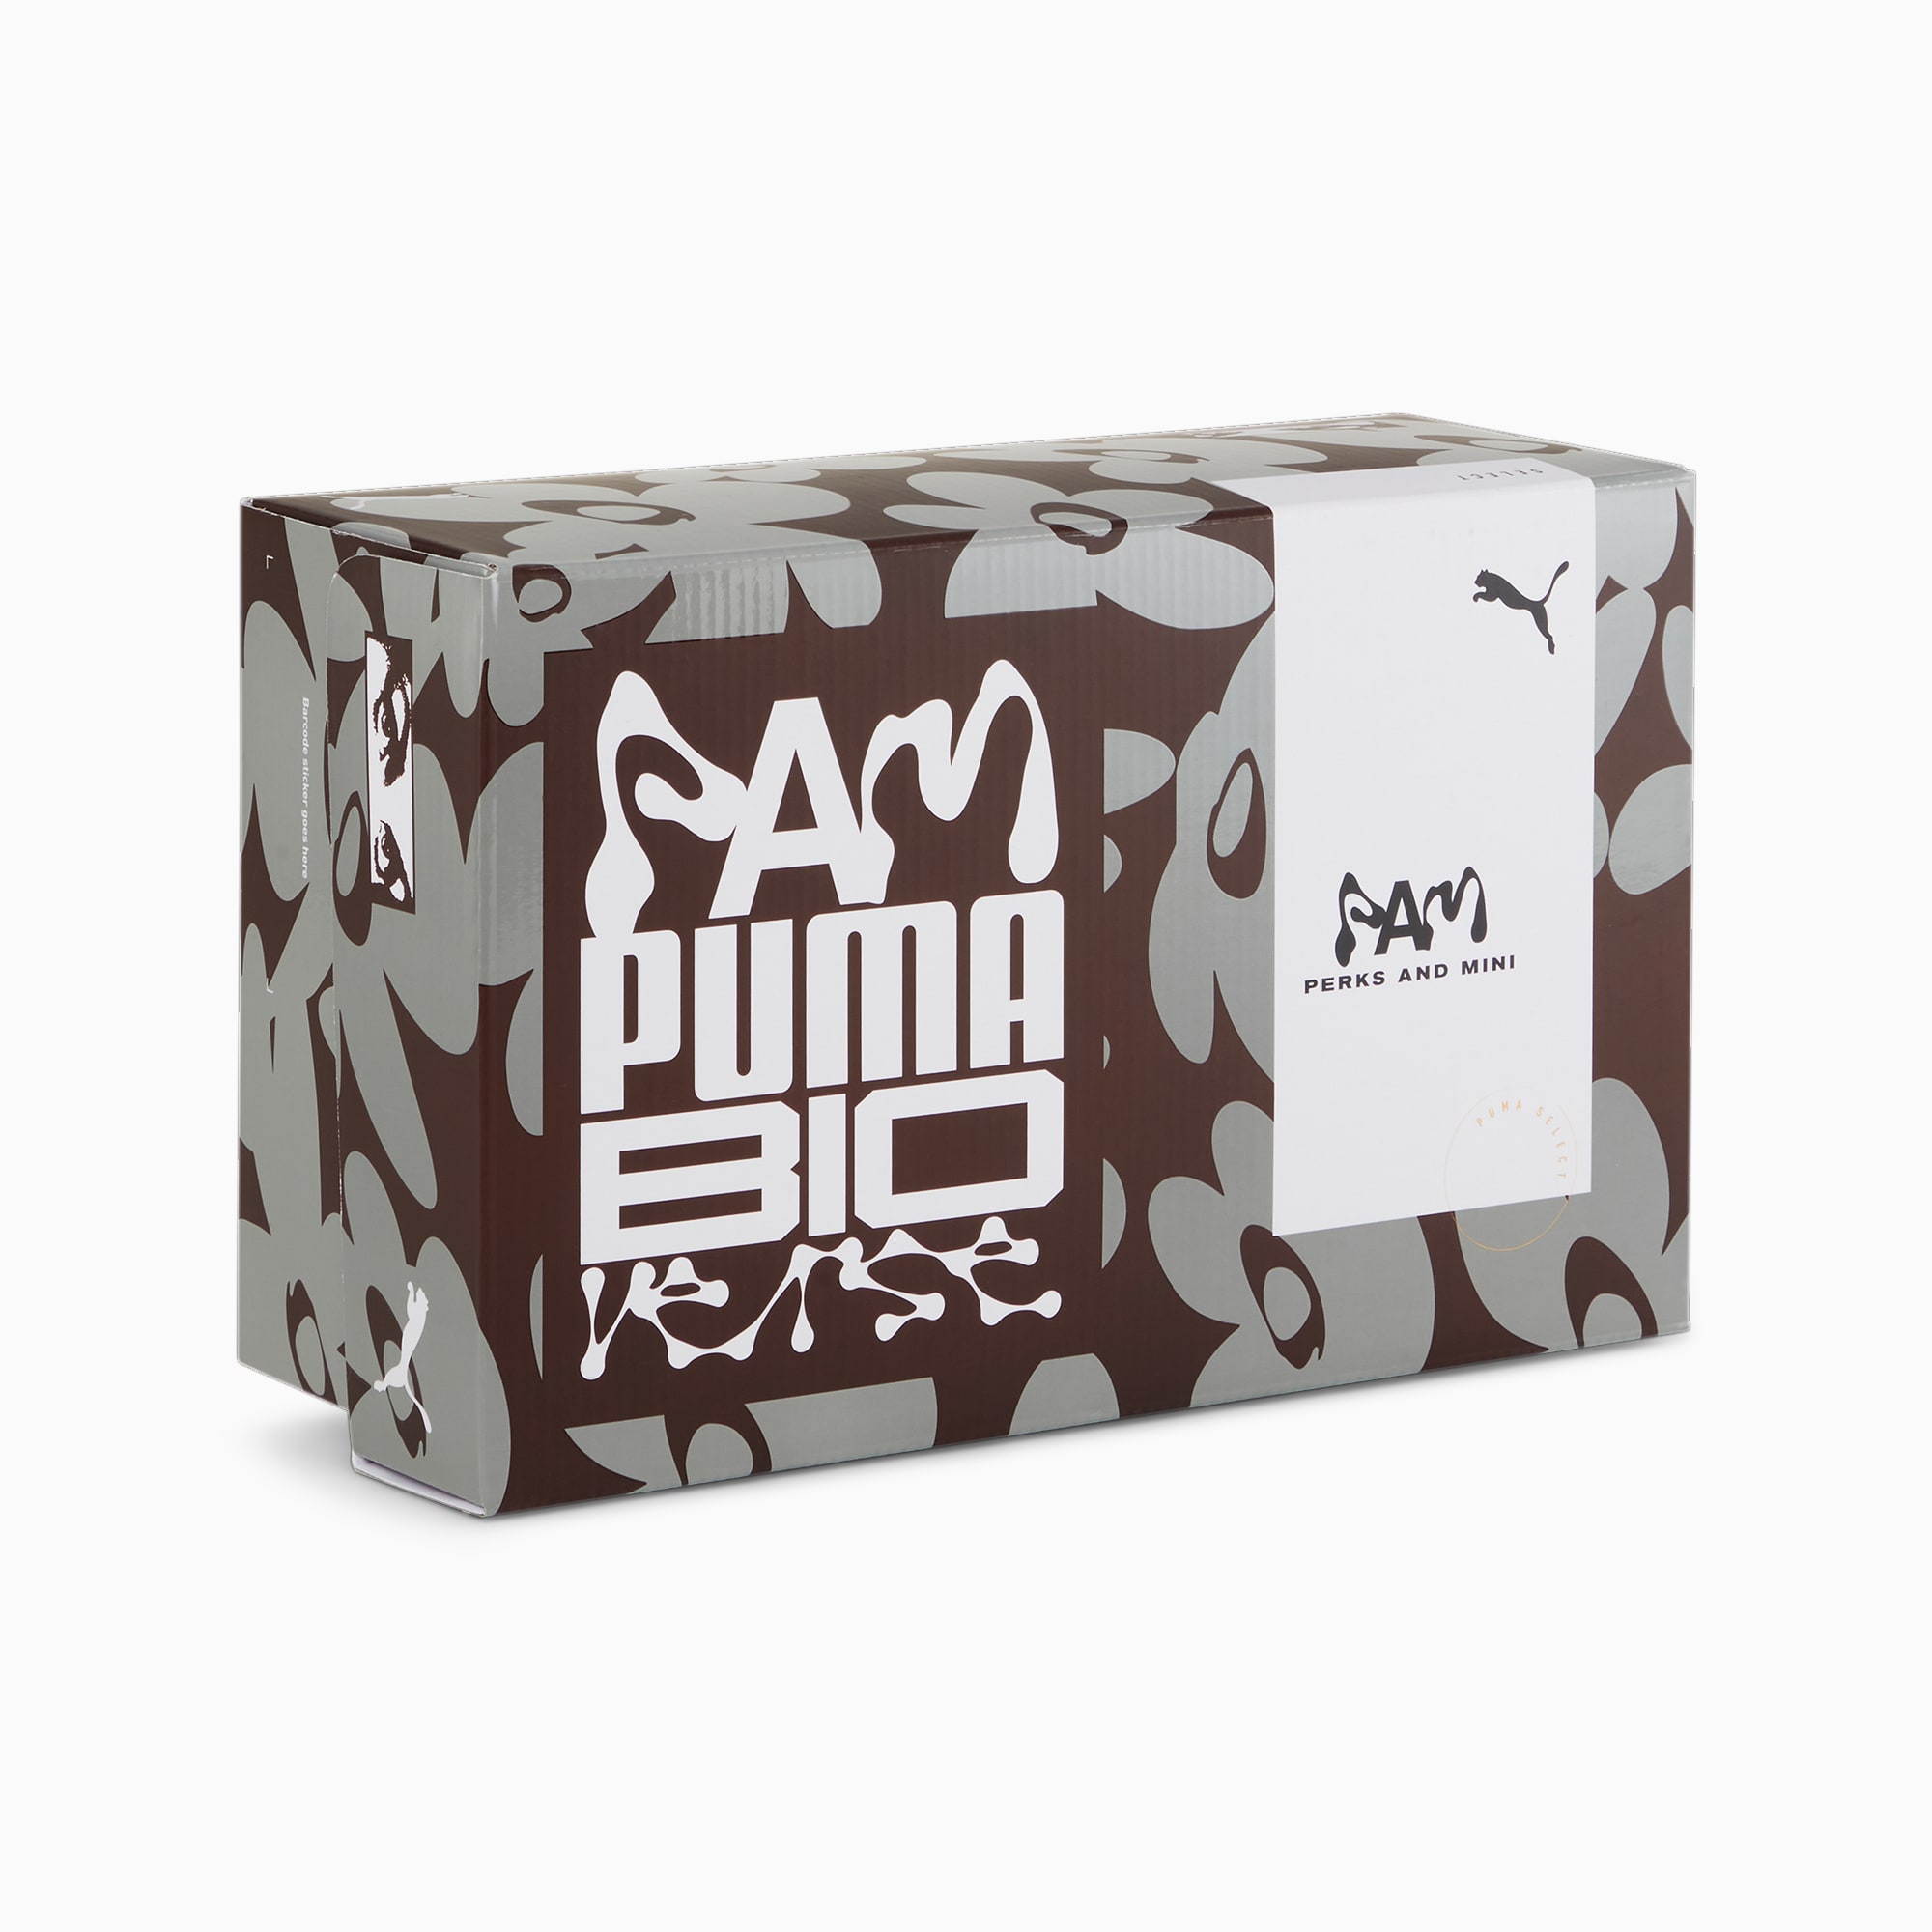 PUMA x PERKS AND MINI Plexus Men's Sneakers | PUMA